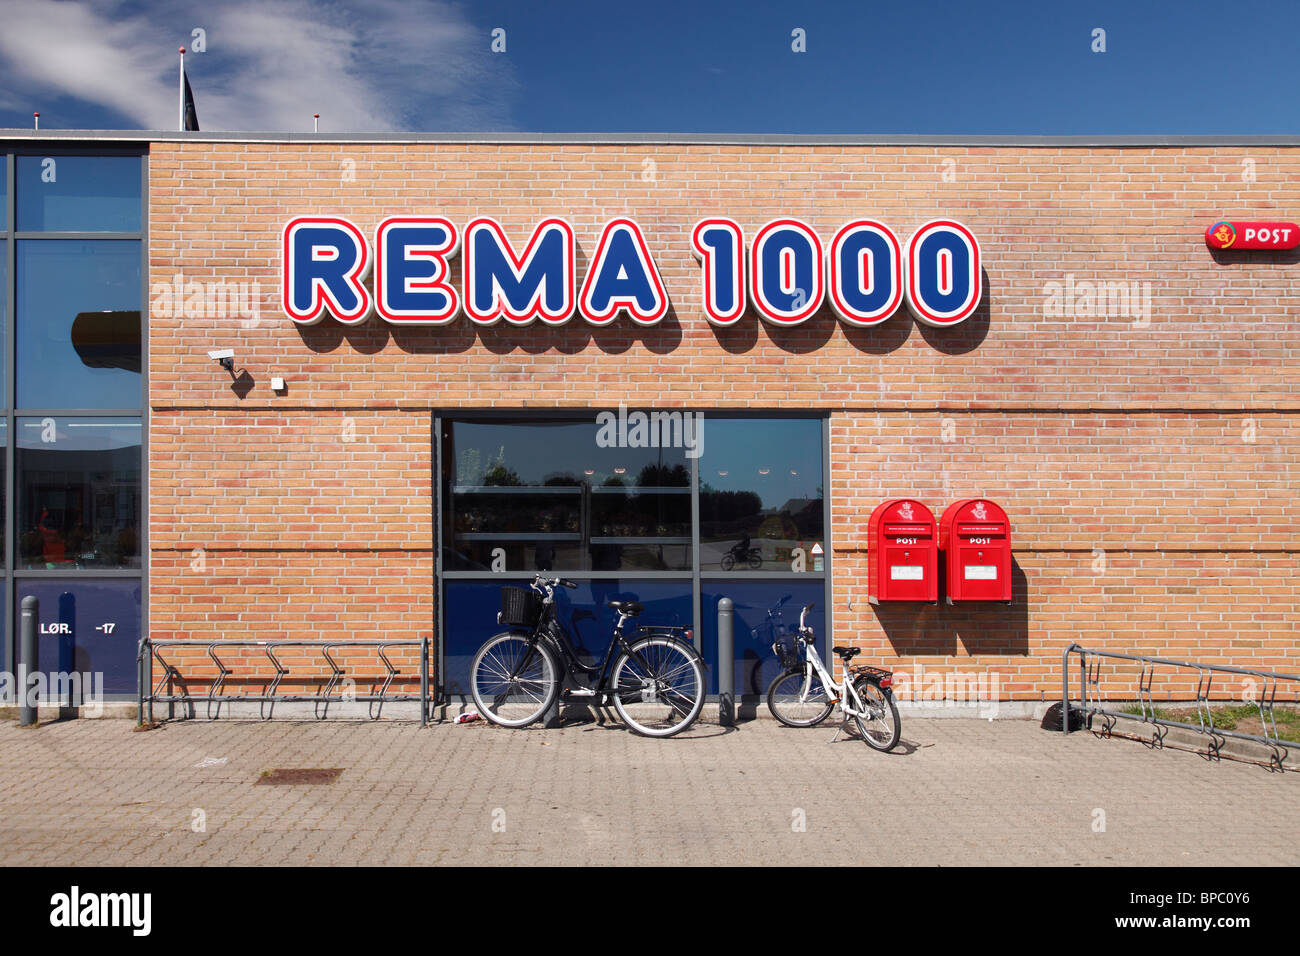 hovedlandet Desværre skræmt Rema 1000 hi-res stock photography and images - Alamy